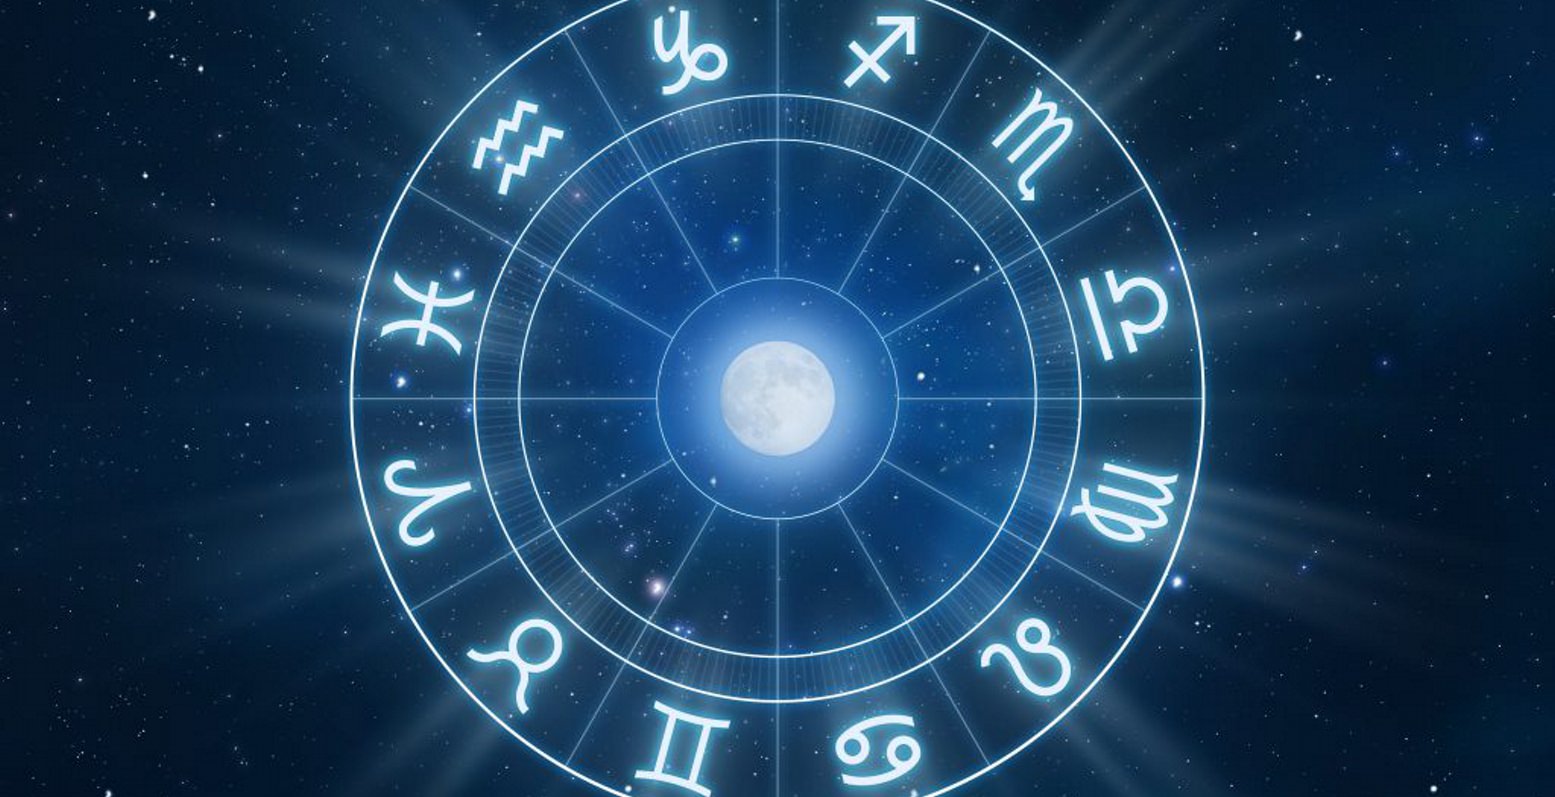 Αστρολογικές προβλέψεις 26/8: Ξαφνικές αλλαγές σε οικονομικά και συναισθηματικά θέματα